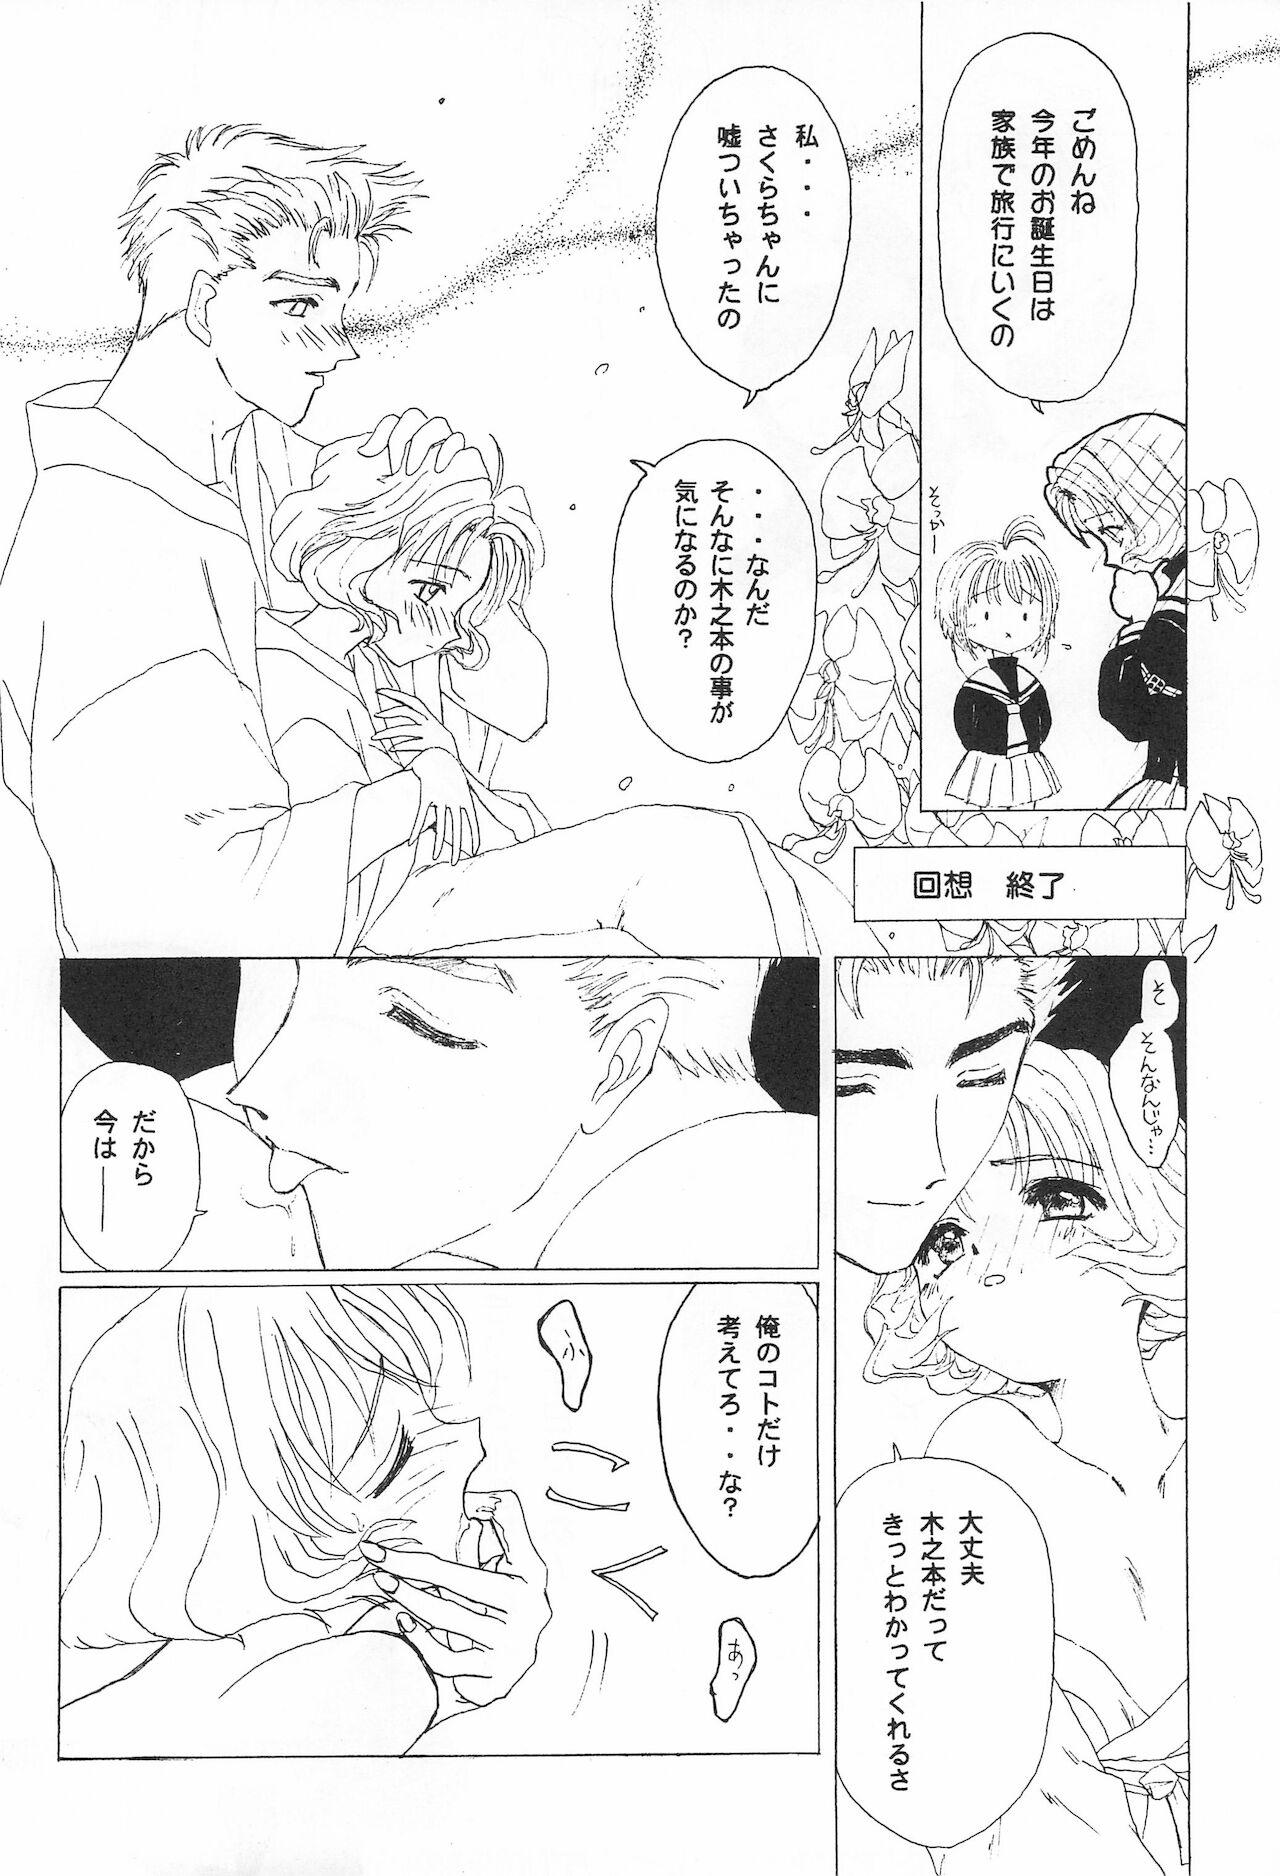 Foot Fetish Sakuranbo MAGIC - Cardcaptor sakura Bakusou kyoudai lets and go Fun fun pharmacy Fucking Girls - Page 6